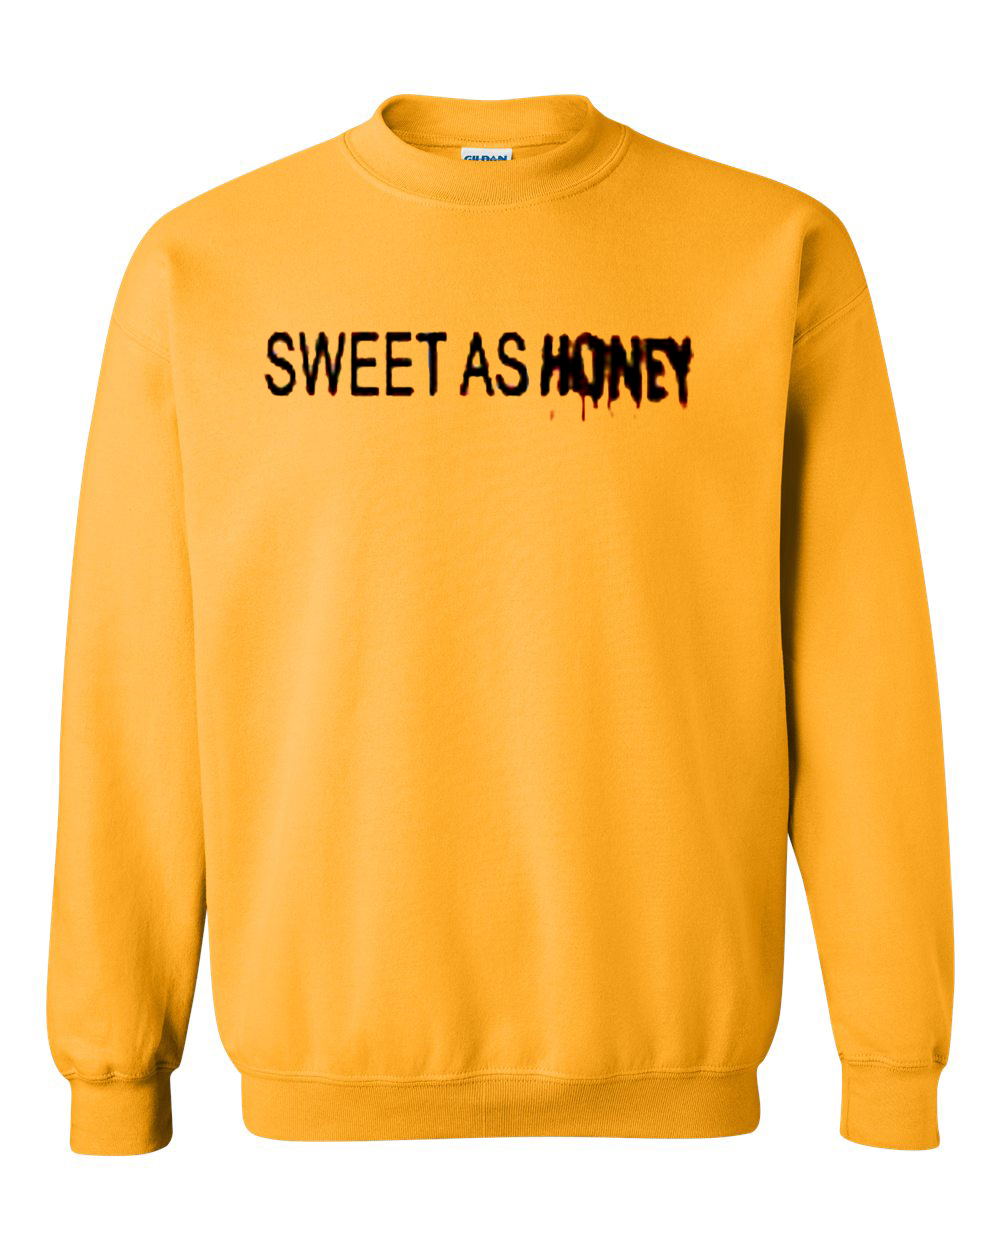 honey yellow sweatshirt